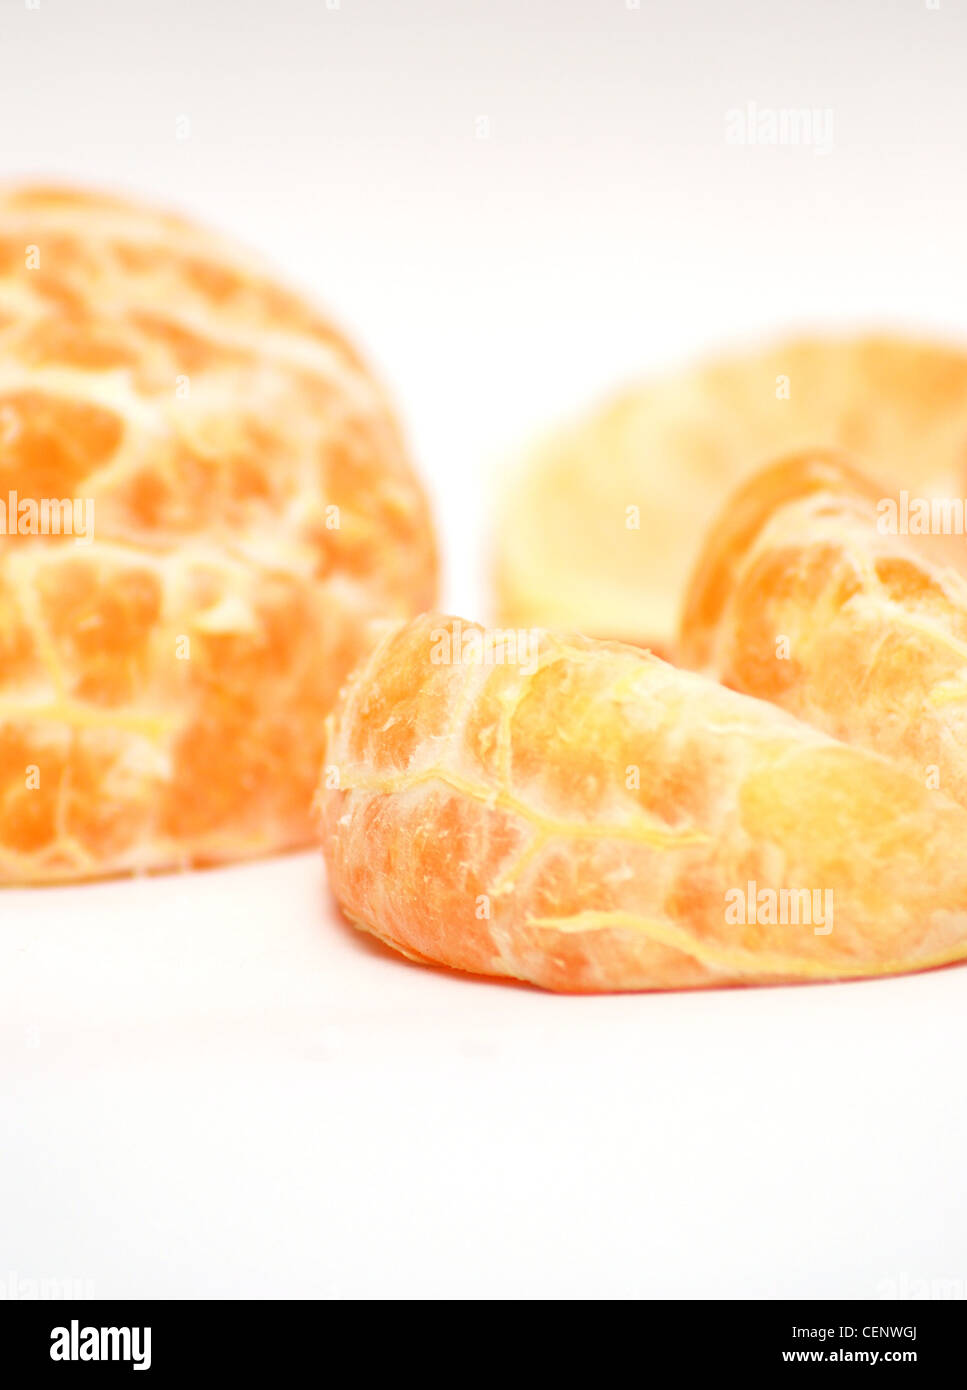 Closeup image of mandarines on the white background. Stock Photo